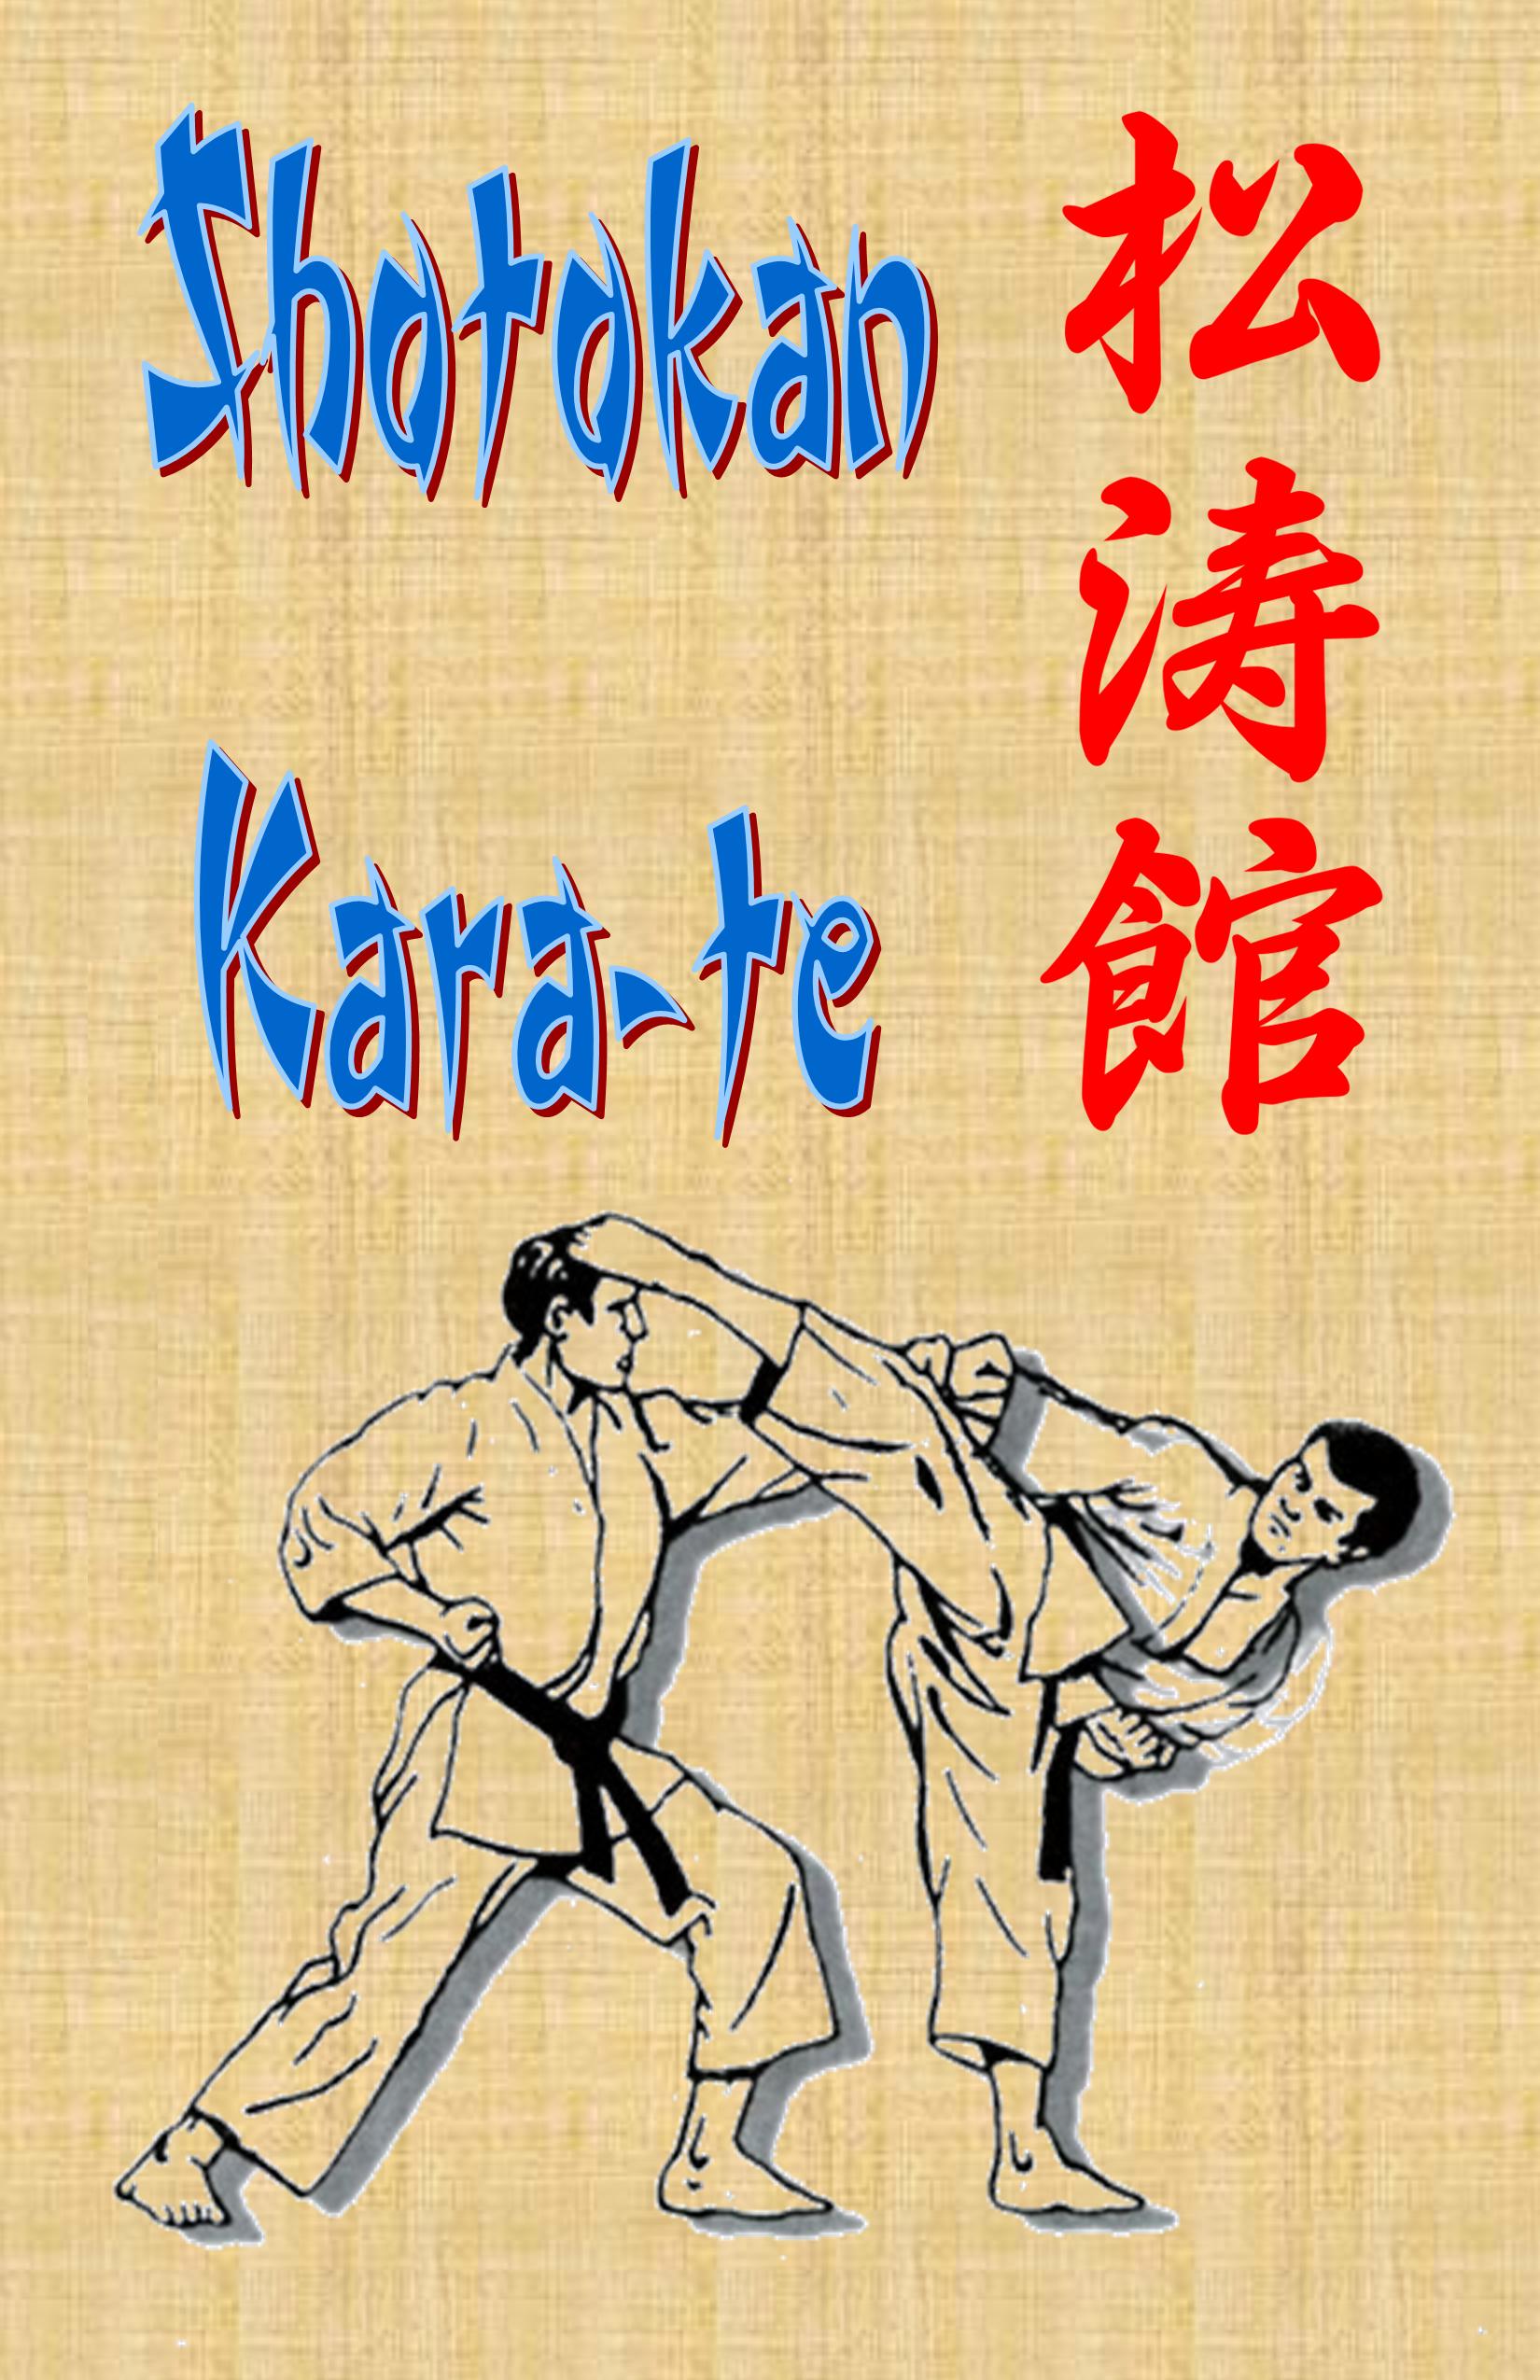 Shotokan Kara-te